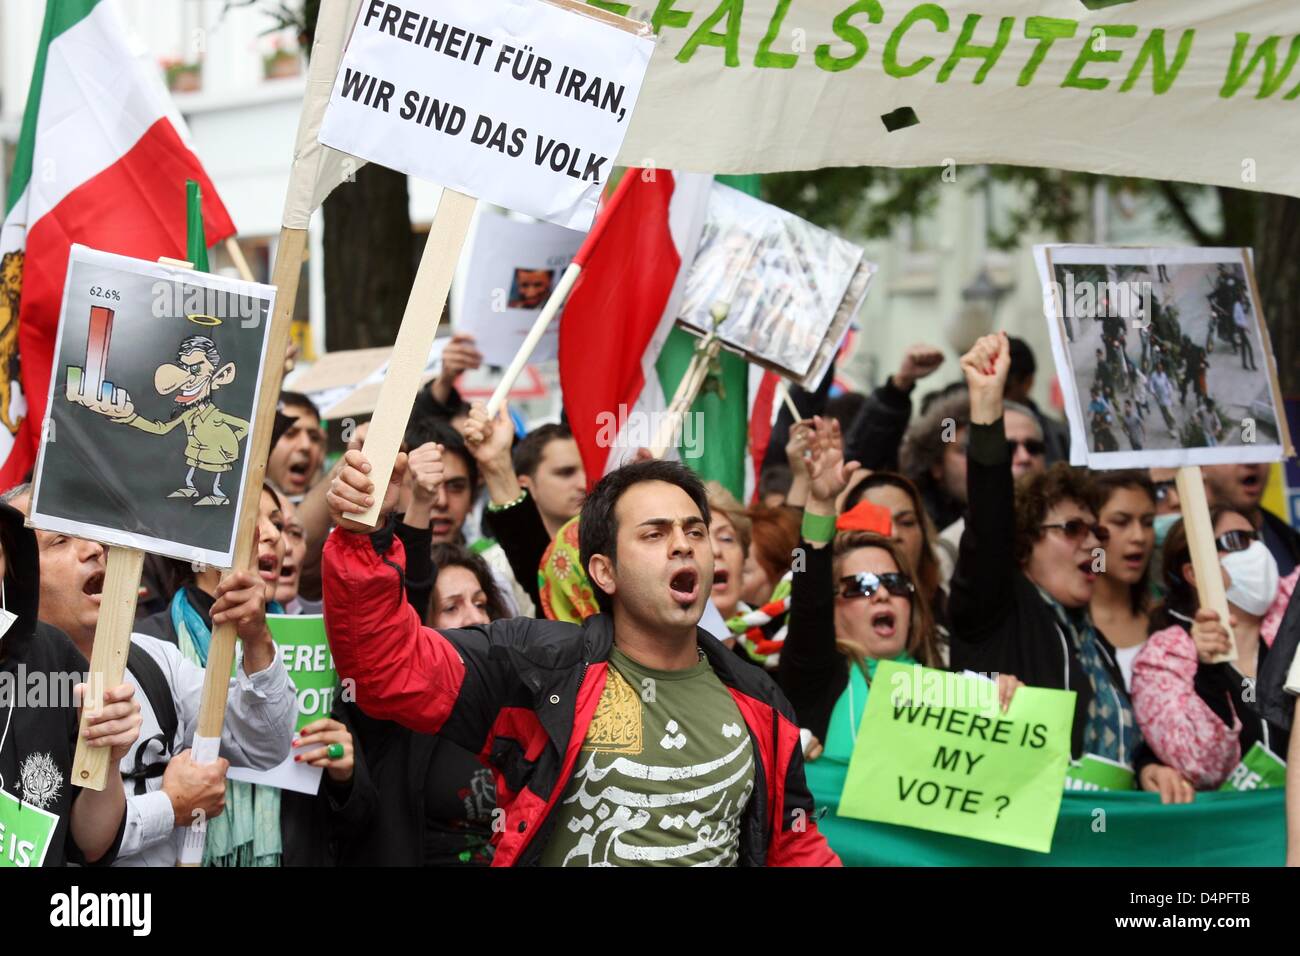 Los manifestantes iraníes durante una manifestación de protesta contra los resultados y conseuqences a las elecciones presidenciales en Irán en Hamburgo, Alemania, el 20 de junio de 2009. Según las cifras de la policía unas 3.000 personas participaron en la manifestación de protesta. Foto: MALTE CRISTIANOS Foto de stock